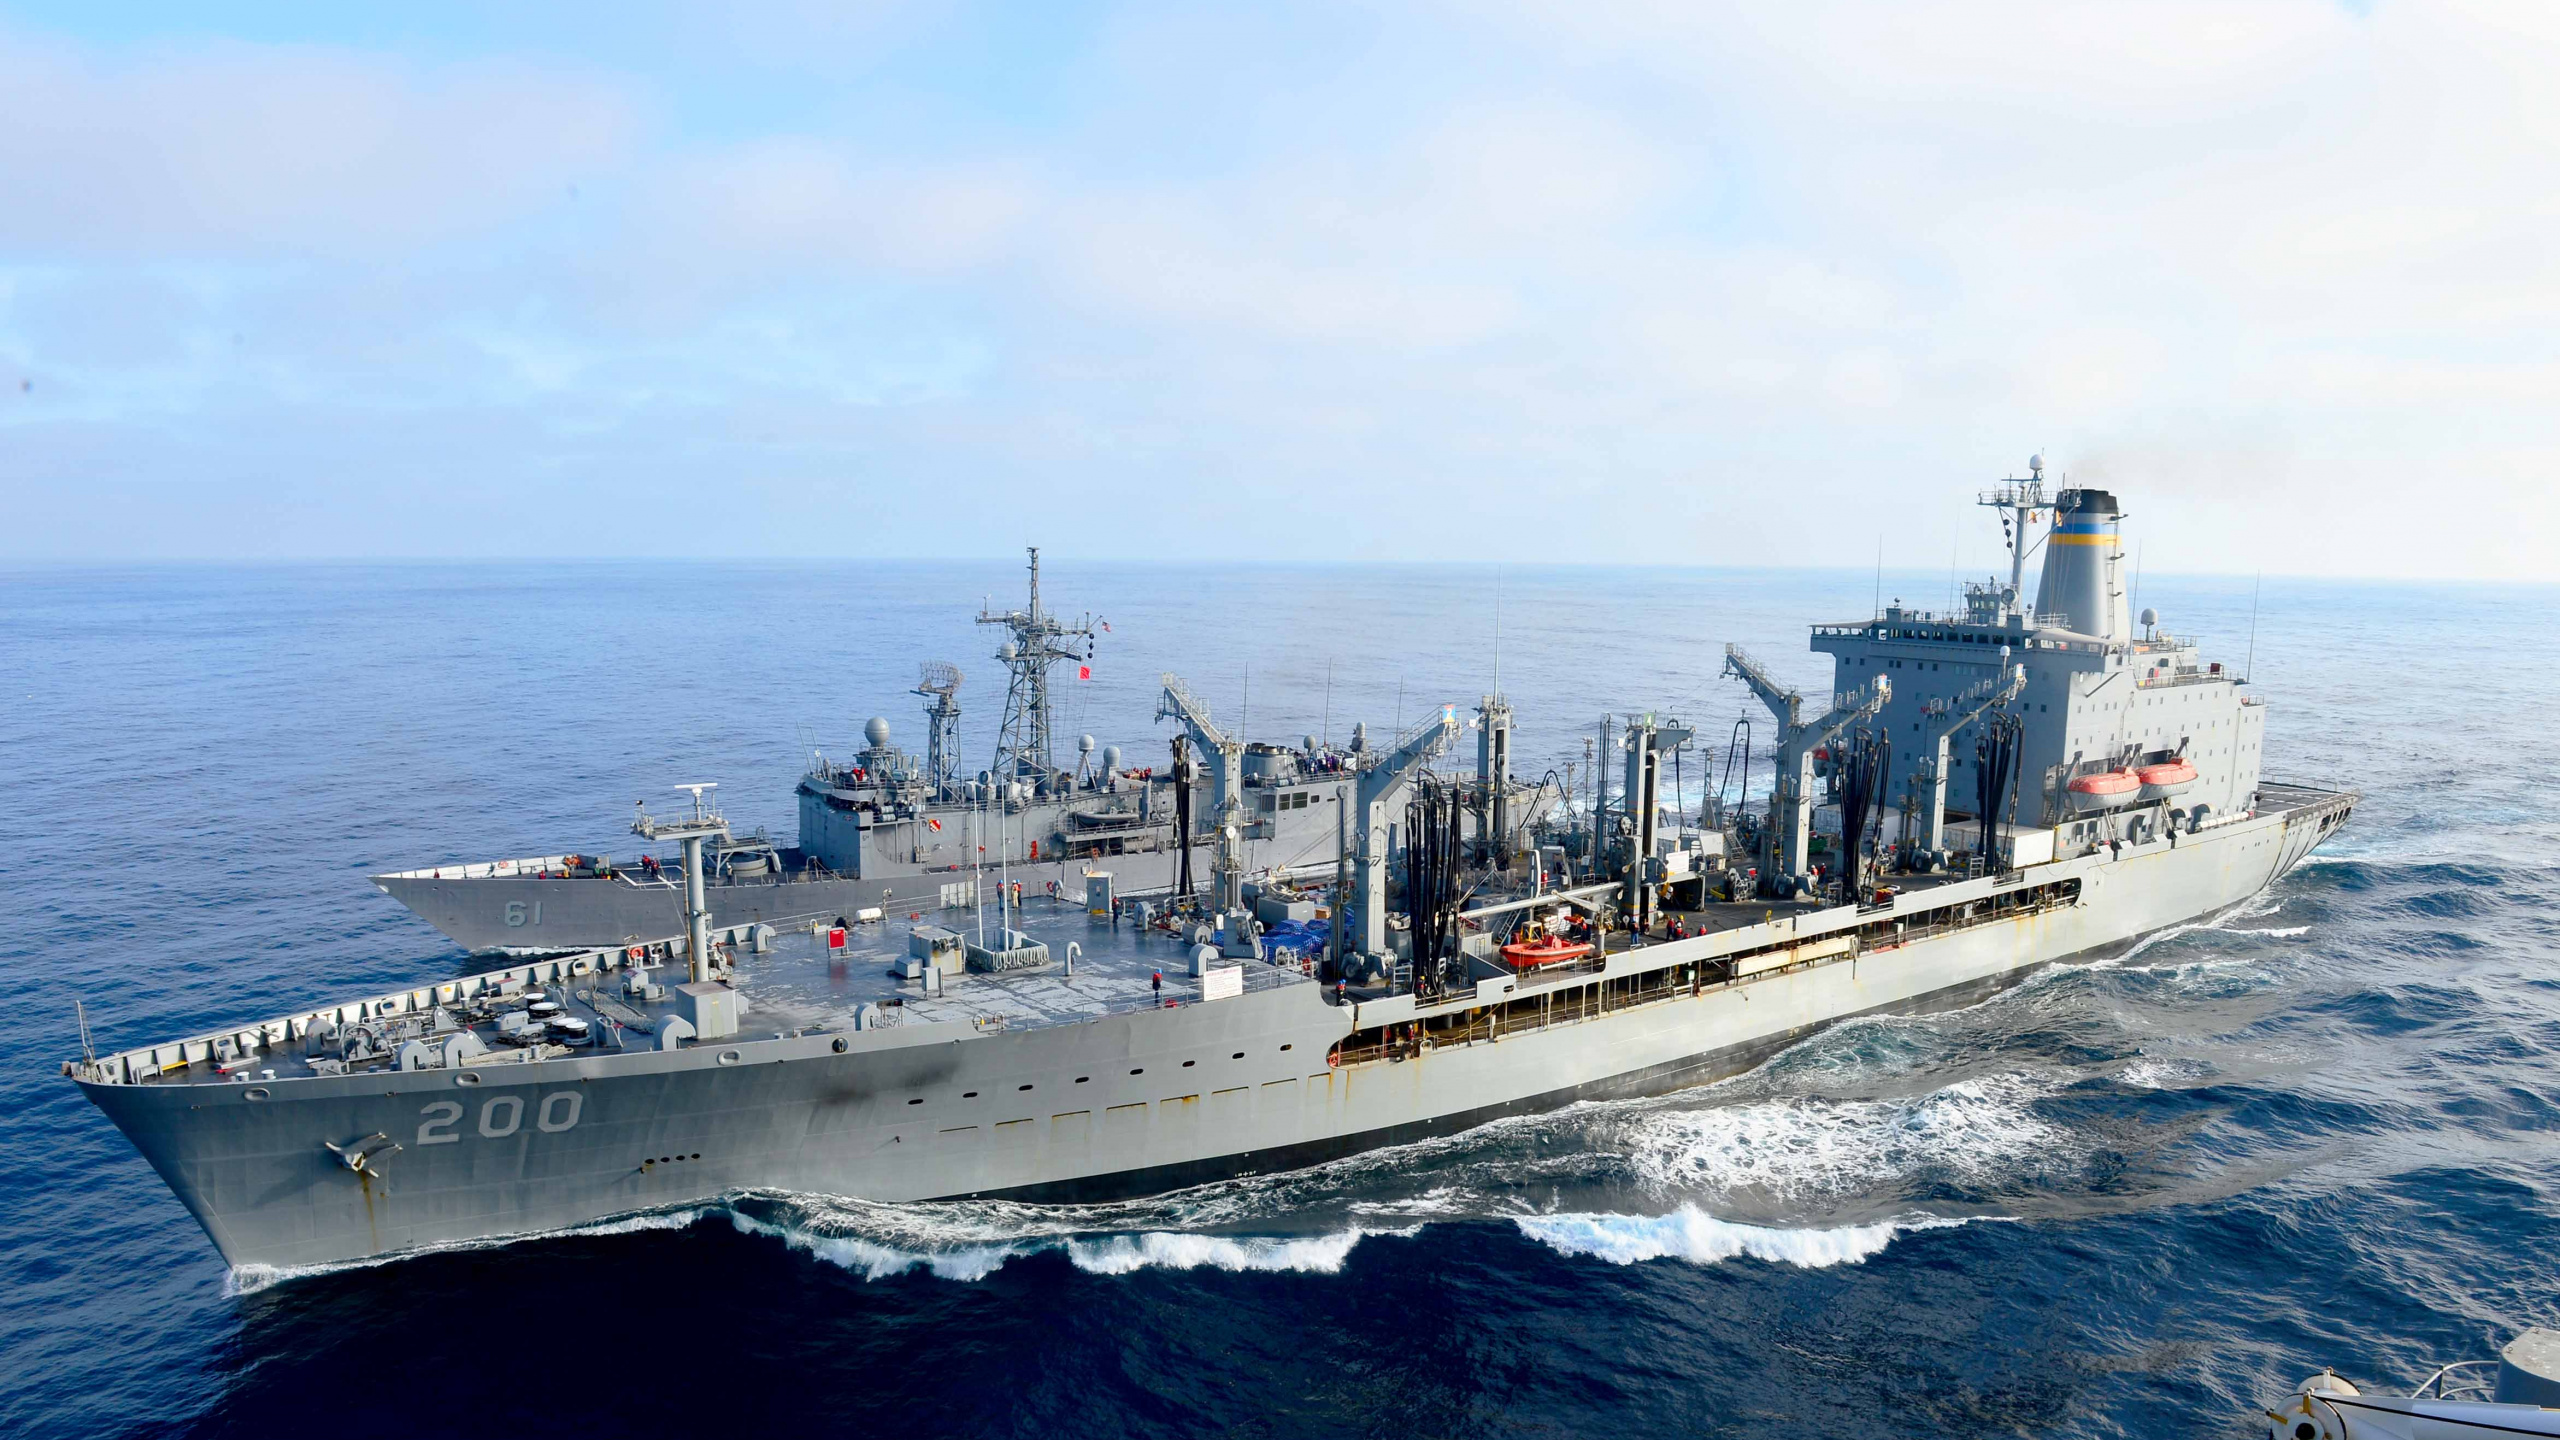 美国海军, 沉重的巡洋舰, 两栖攻击舰, 海军的船, 军舰 壁纸 2560x1440 允许